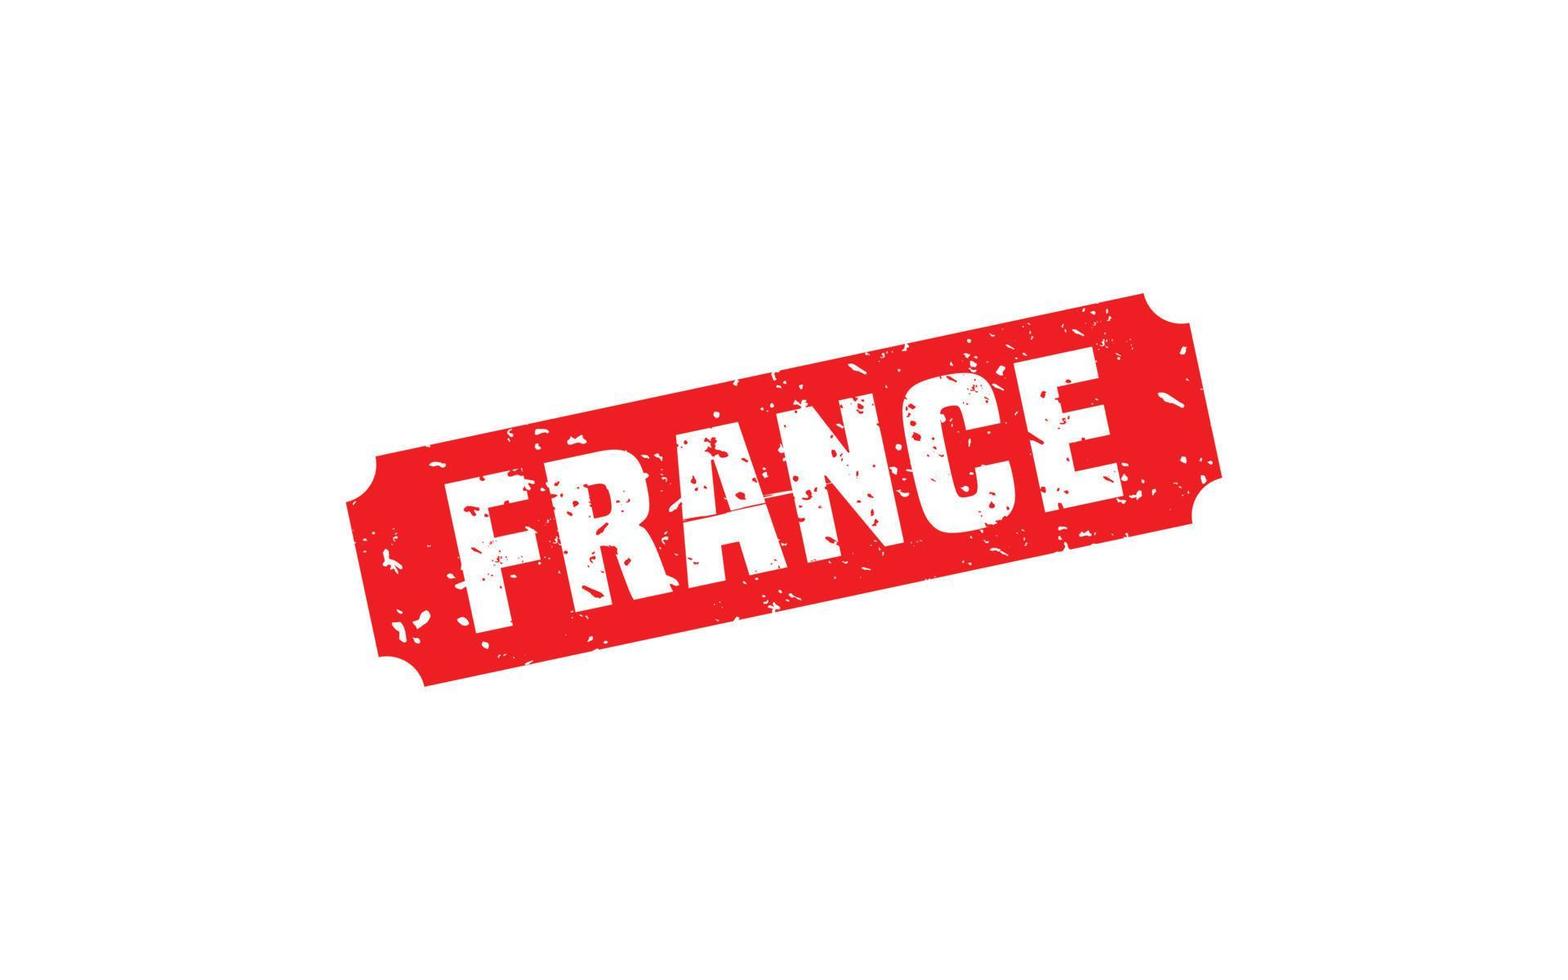 Francia francobollo gomma da cancellare con grunge stile su bianca sfondo vettore